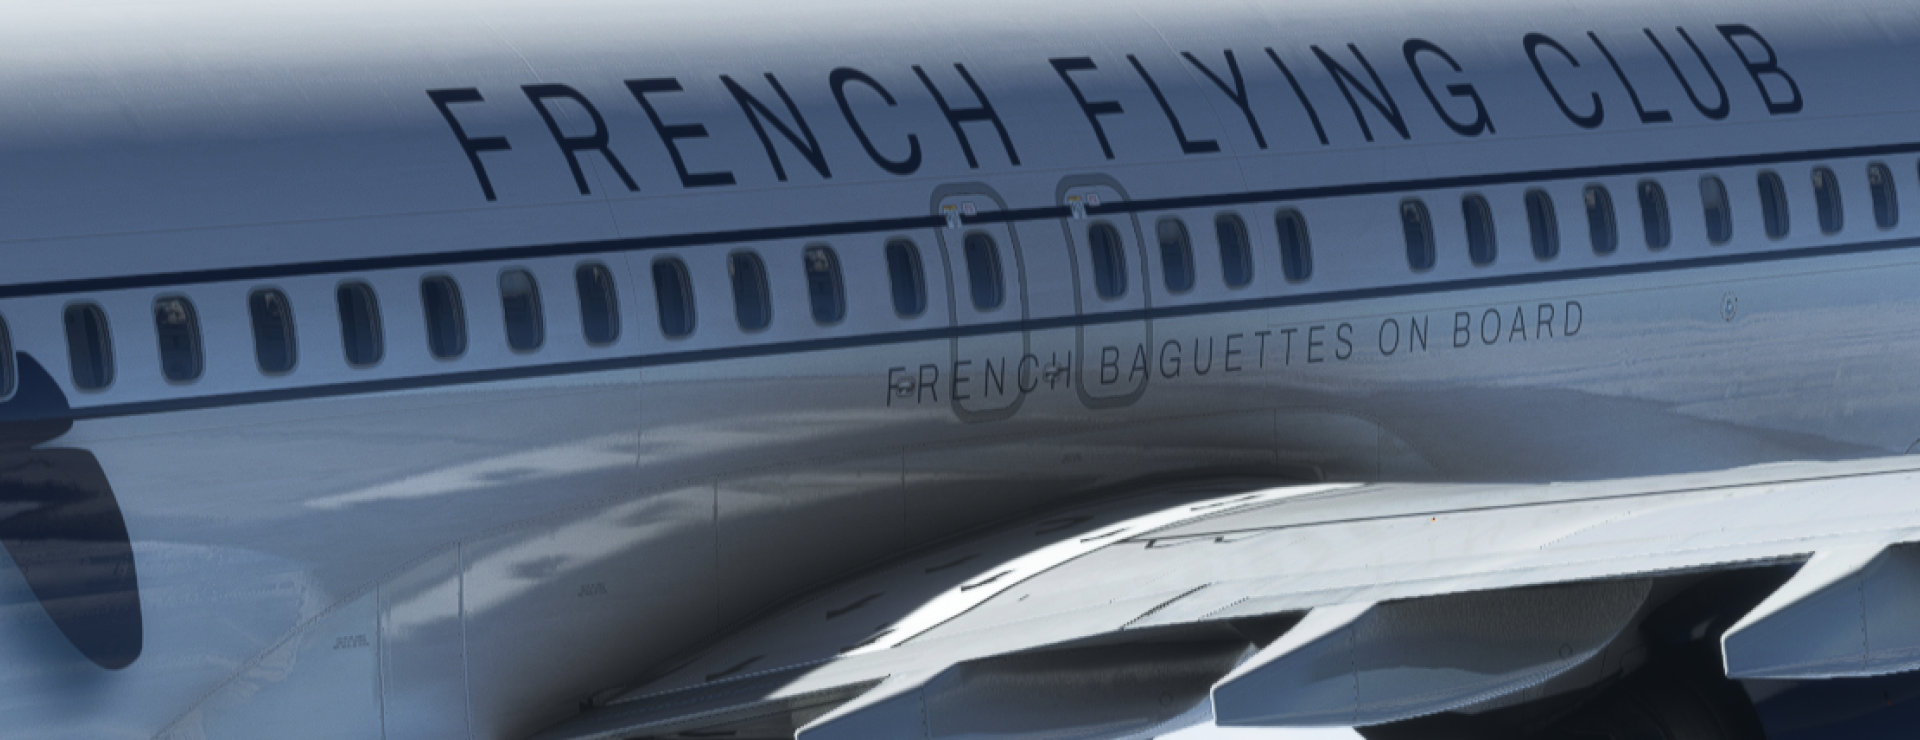 French Flying Club